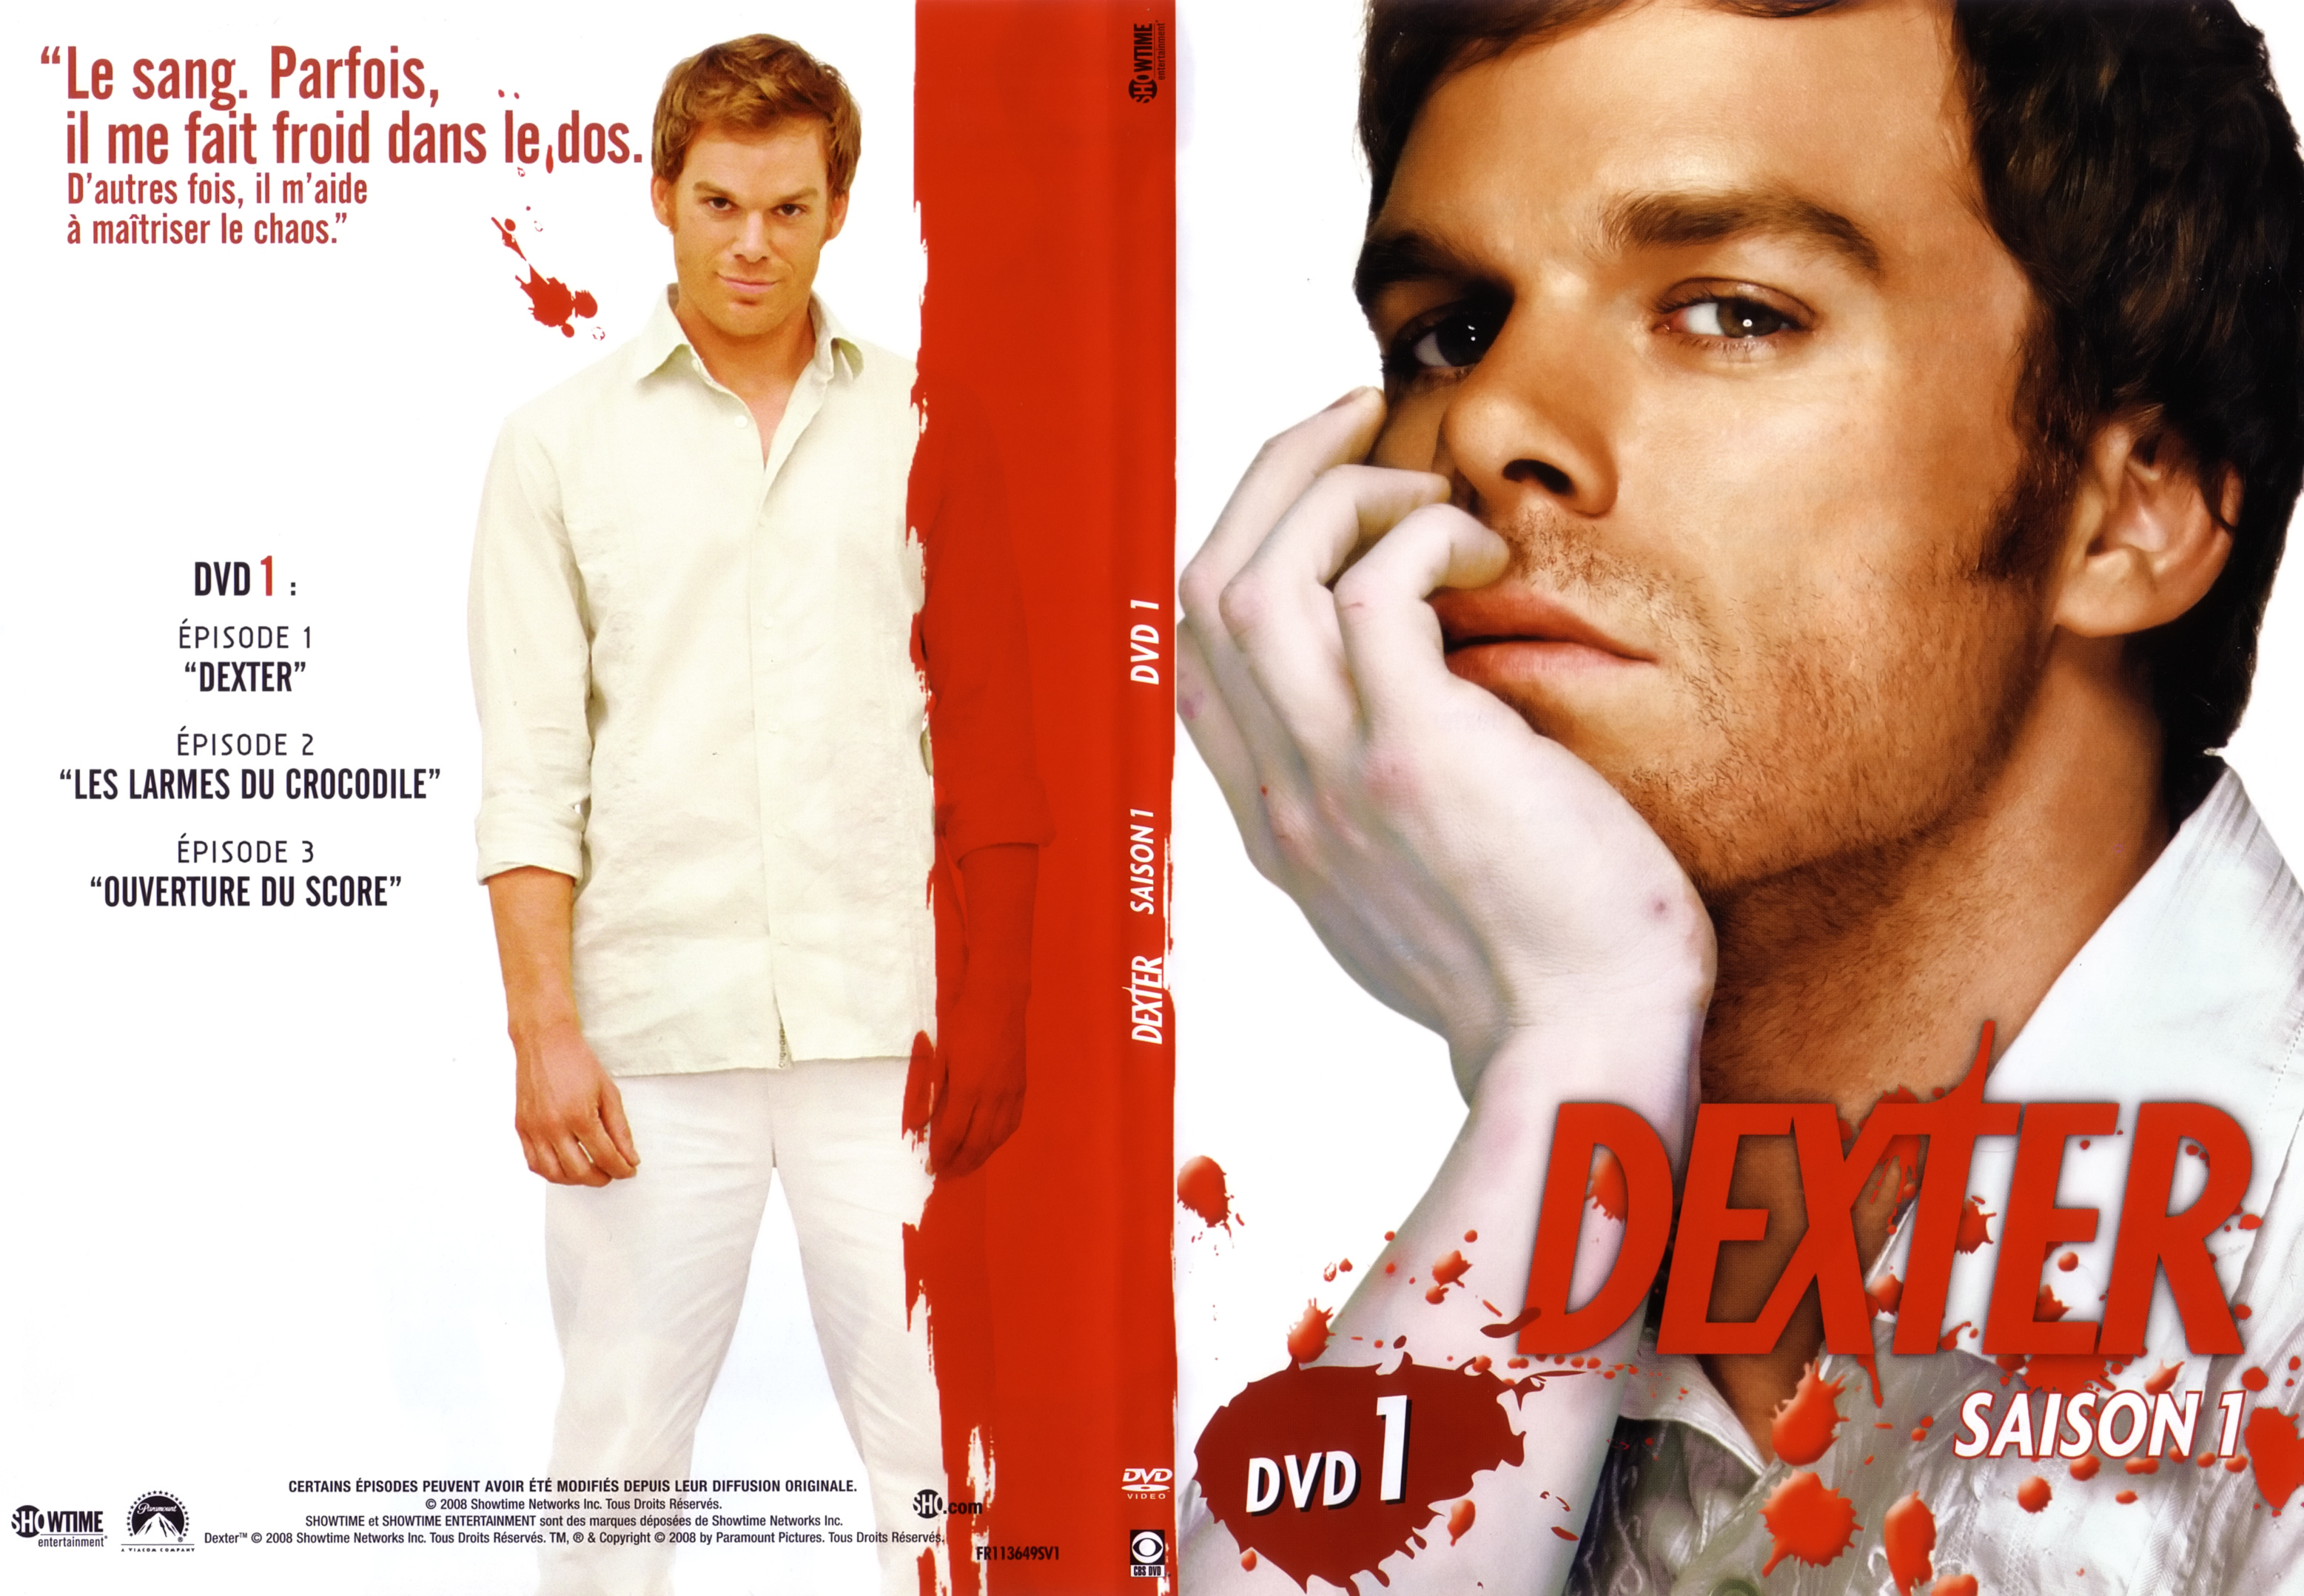 Jaquette DVD Dexter saison 1 DVD 1